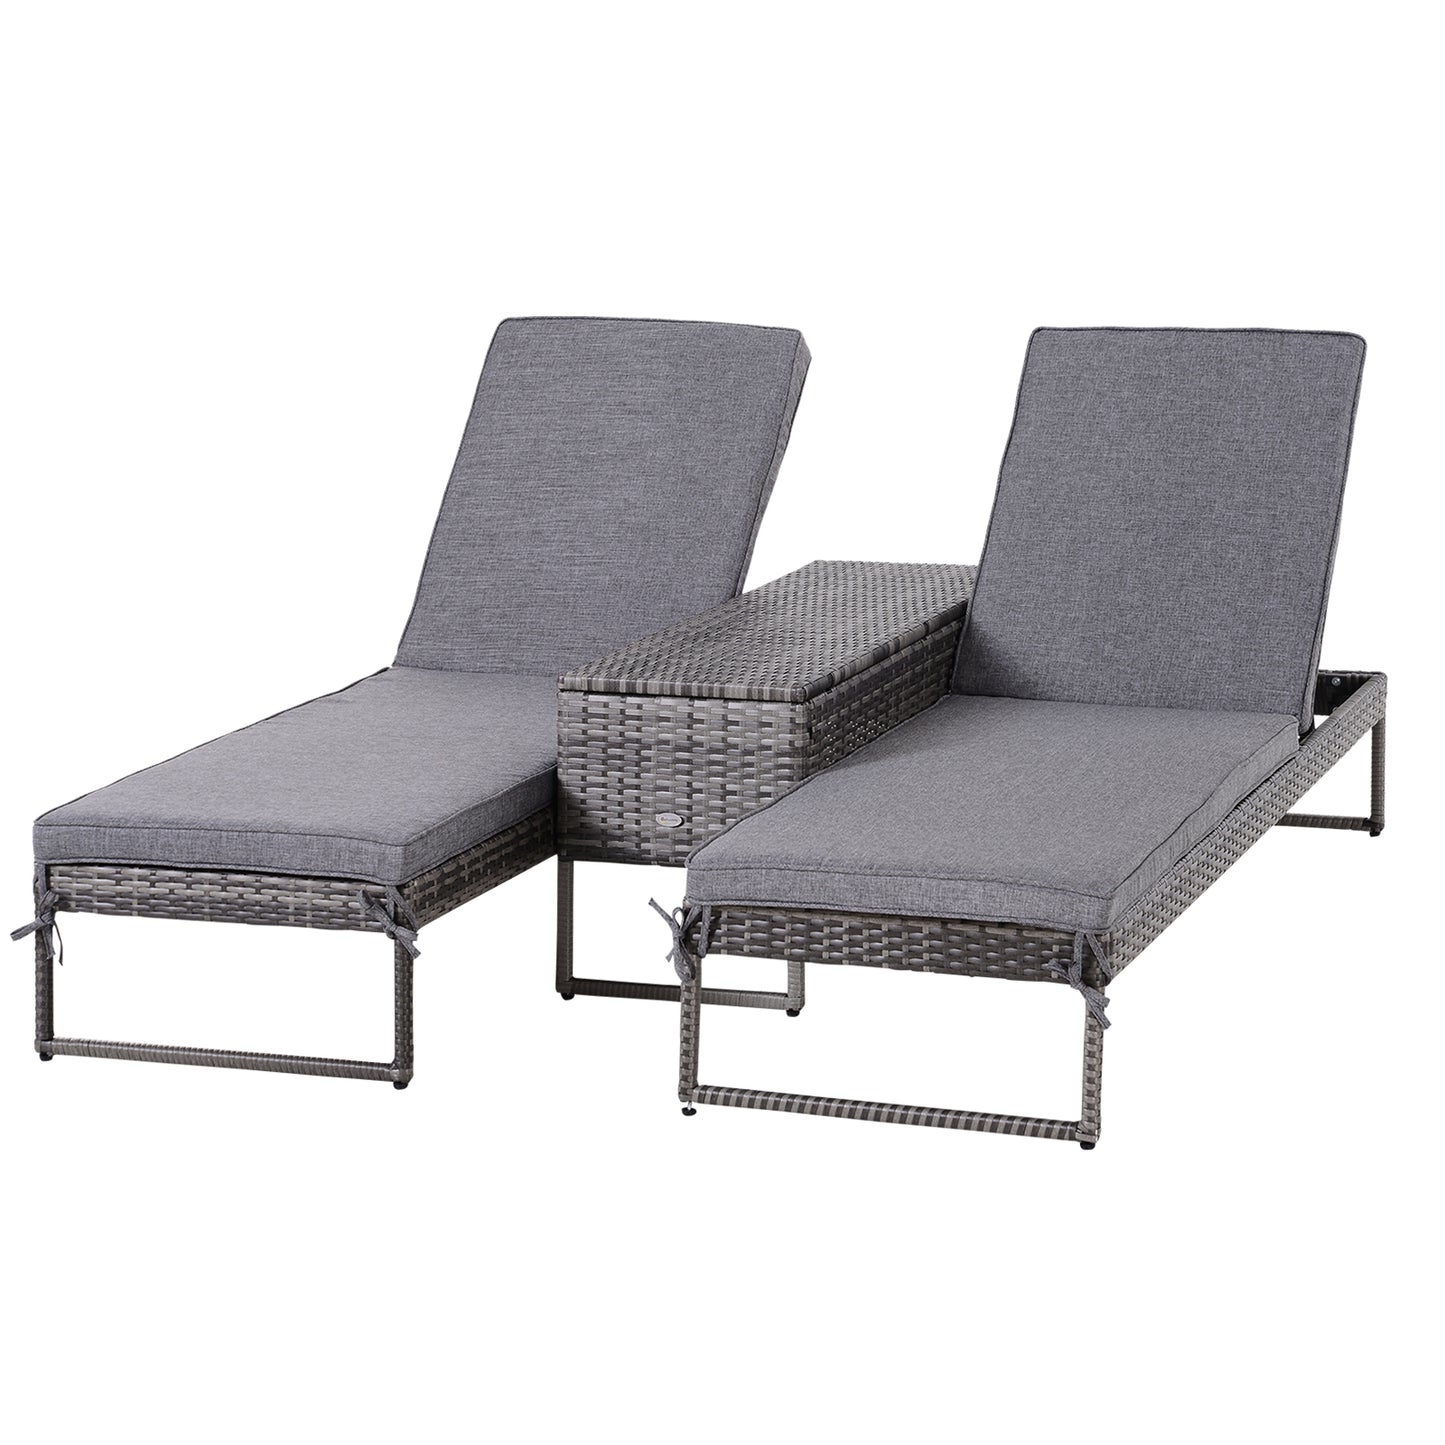 Outsunny PE Rattan 2-Seat Outdoor Garden Sun Lounger Set w/ Table Grey